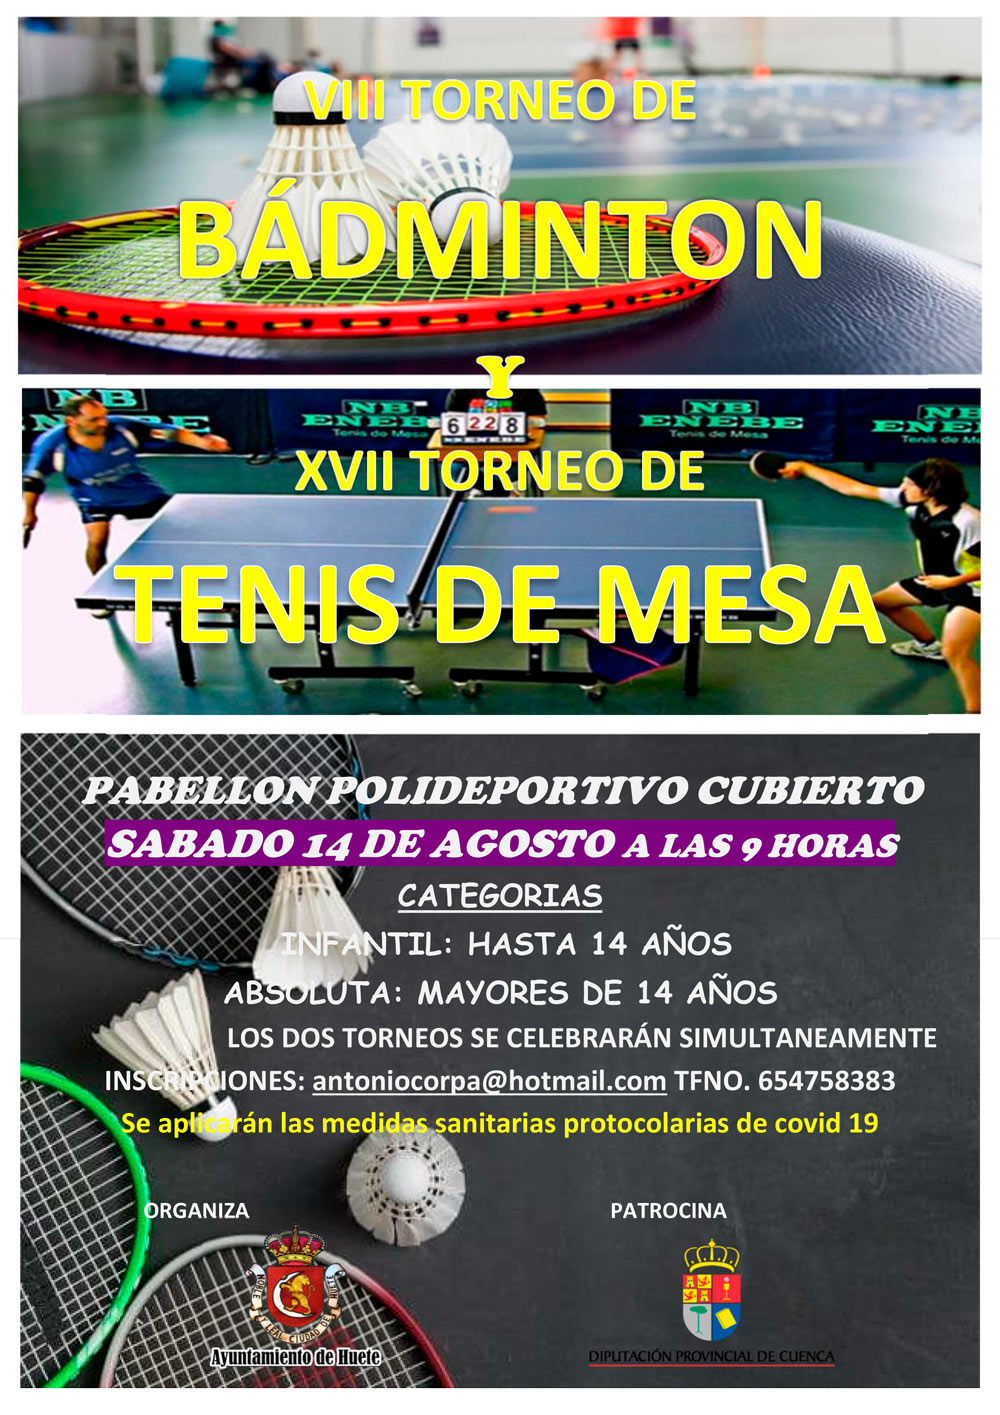 Torneos de Bádminton y de Tenis de Mesa el 14 de agosto en Huete